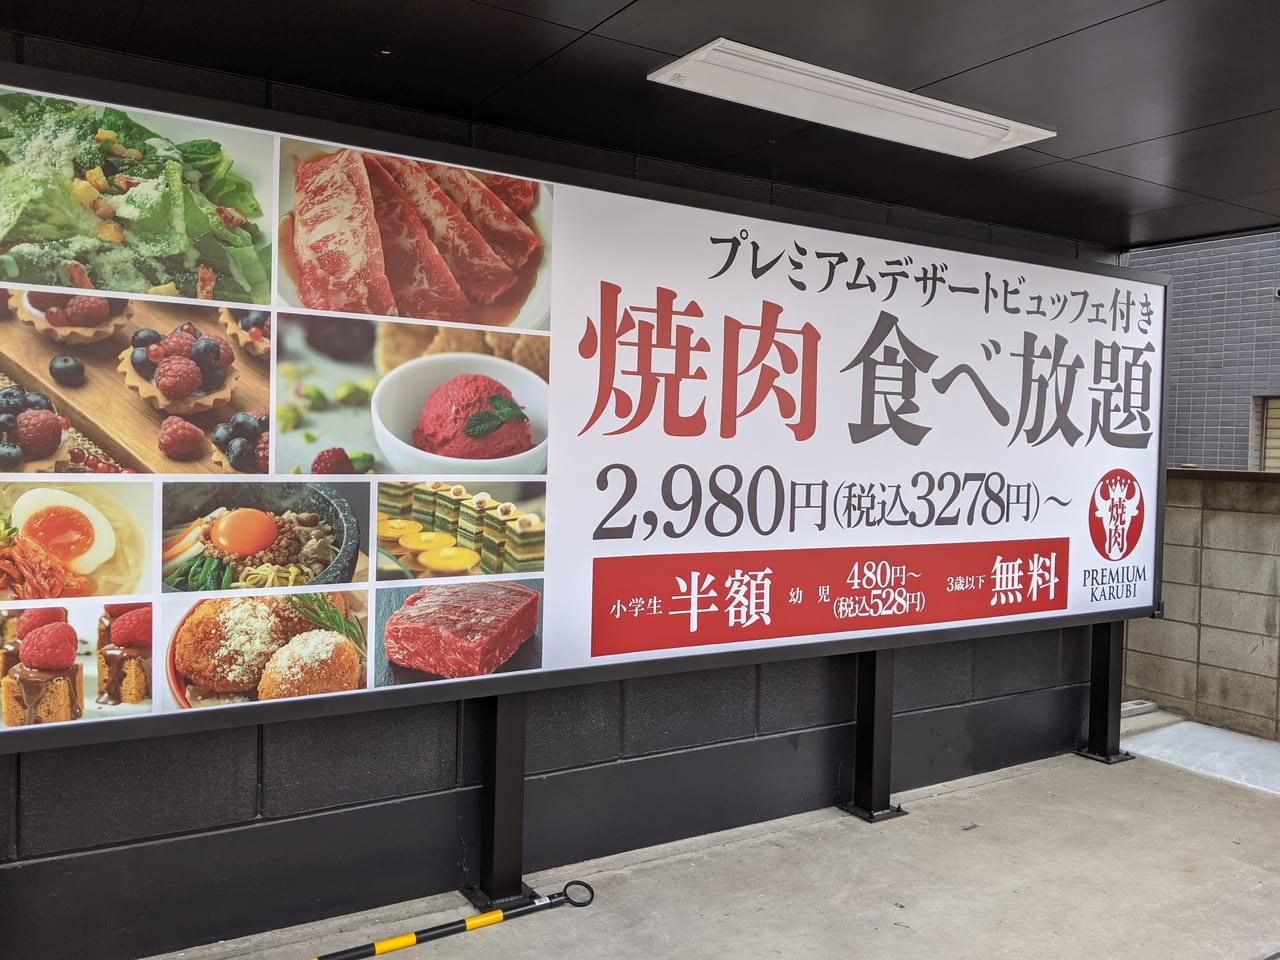 江戸川区 新小岩に Premium Karubi が７月にopen予定 どんなお店 調べてみました 号外net 江戸川区